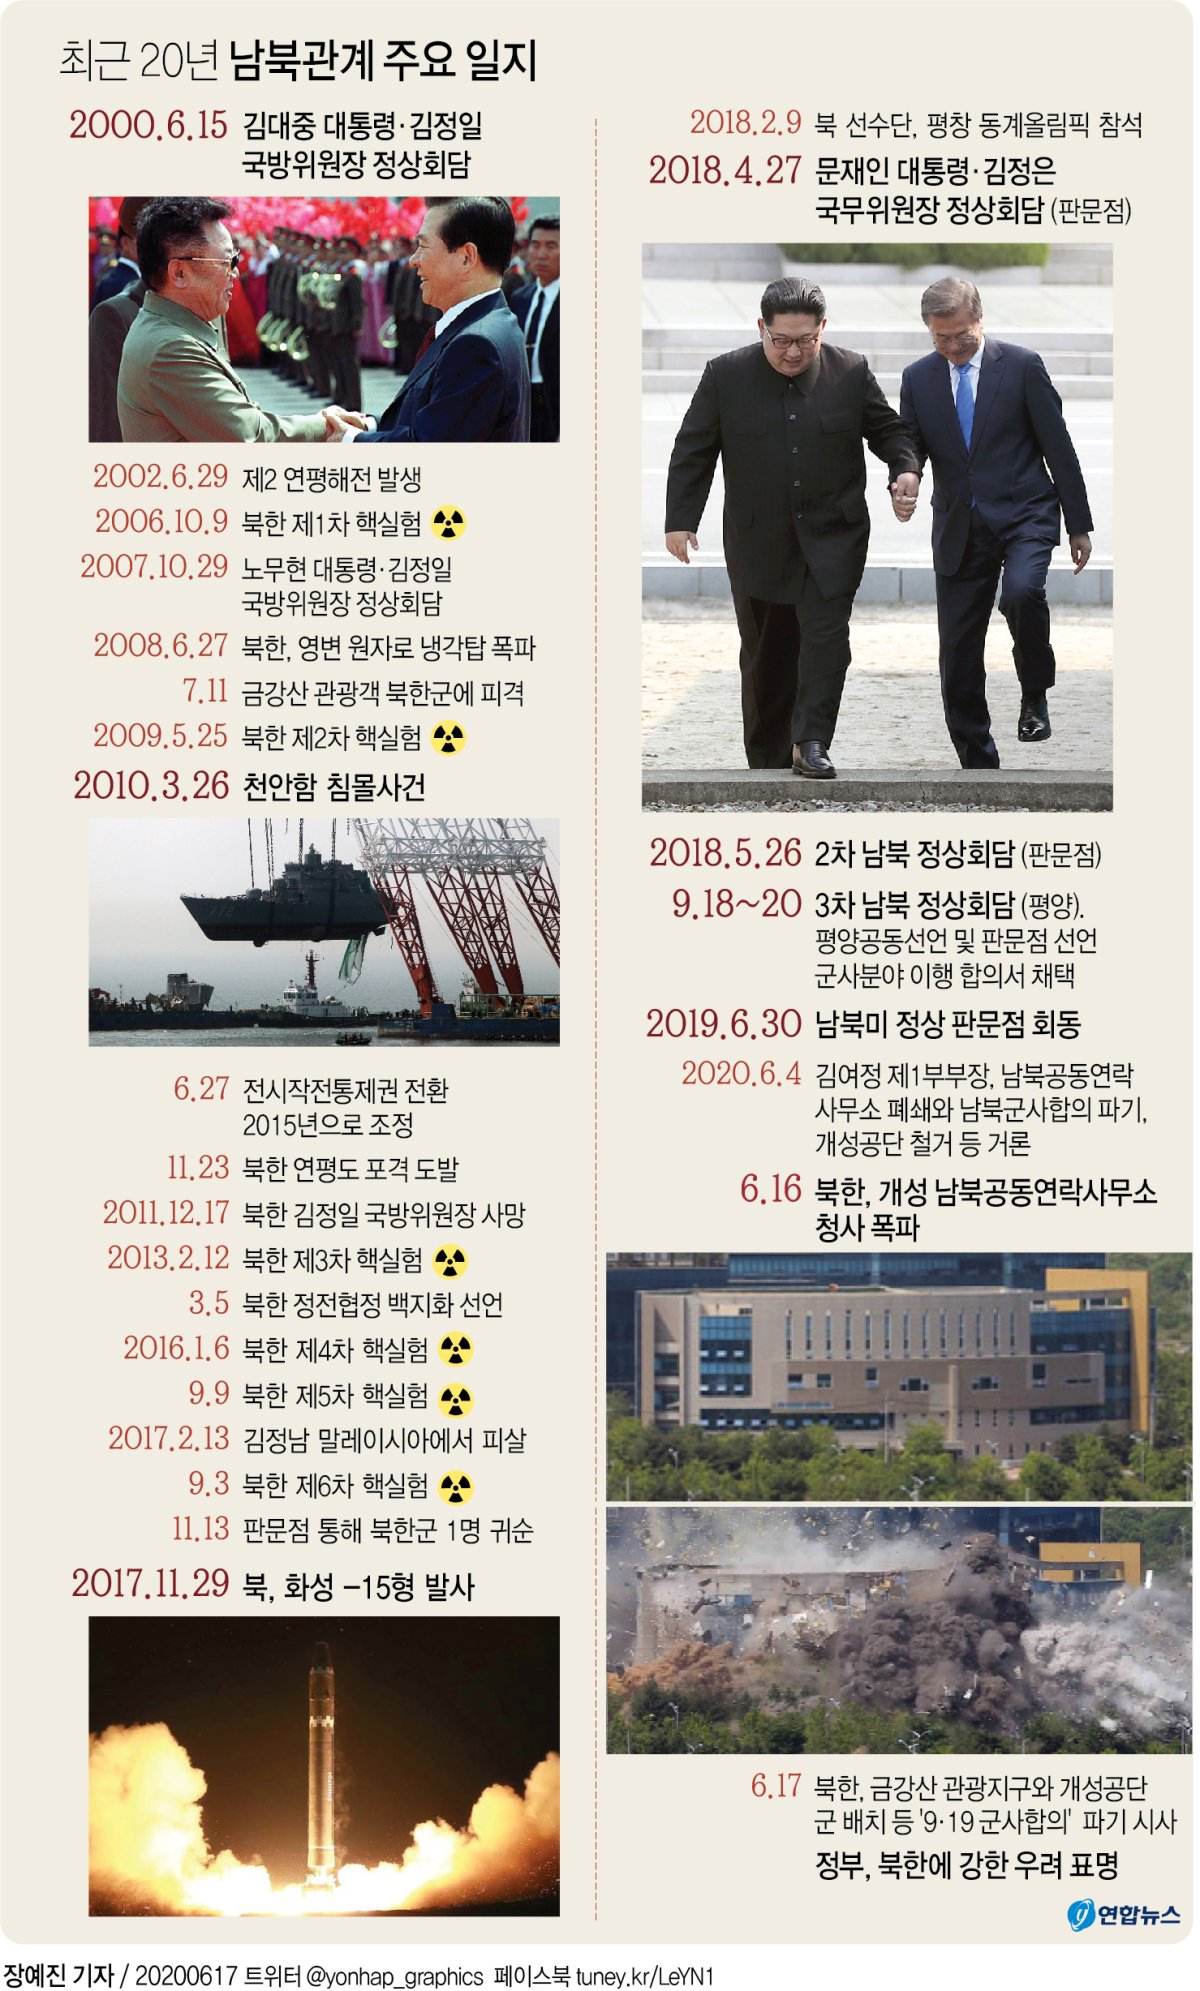 [그래픽] 최근 20년 남북관계 주요 일지